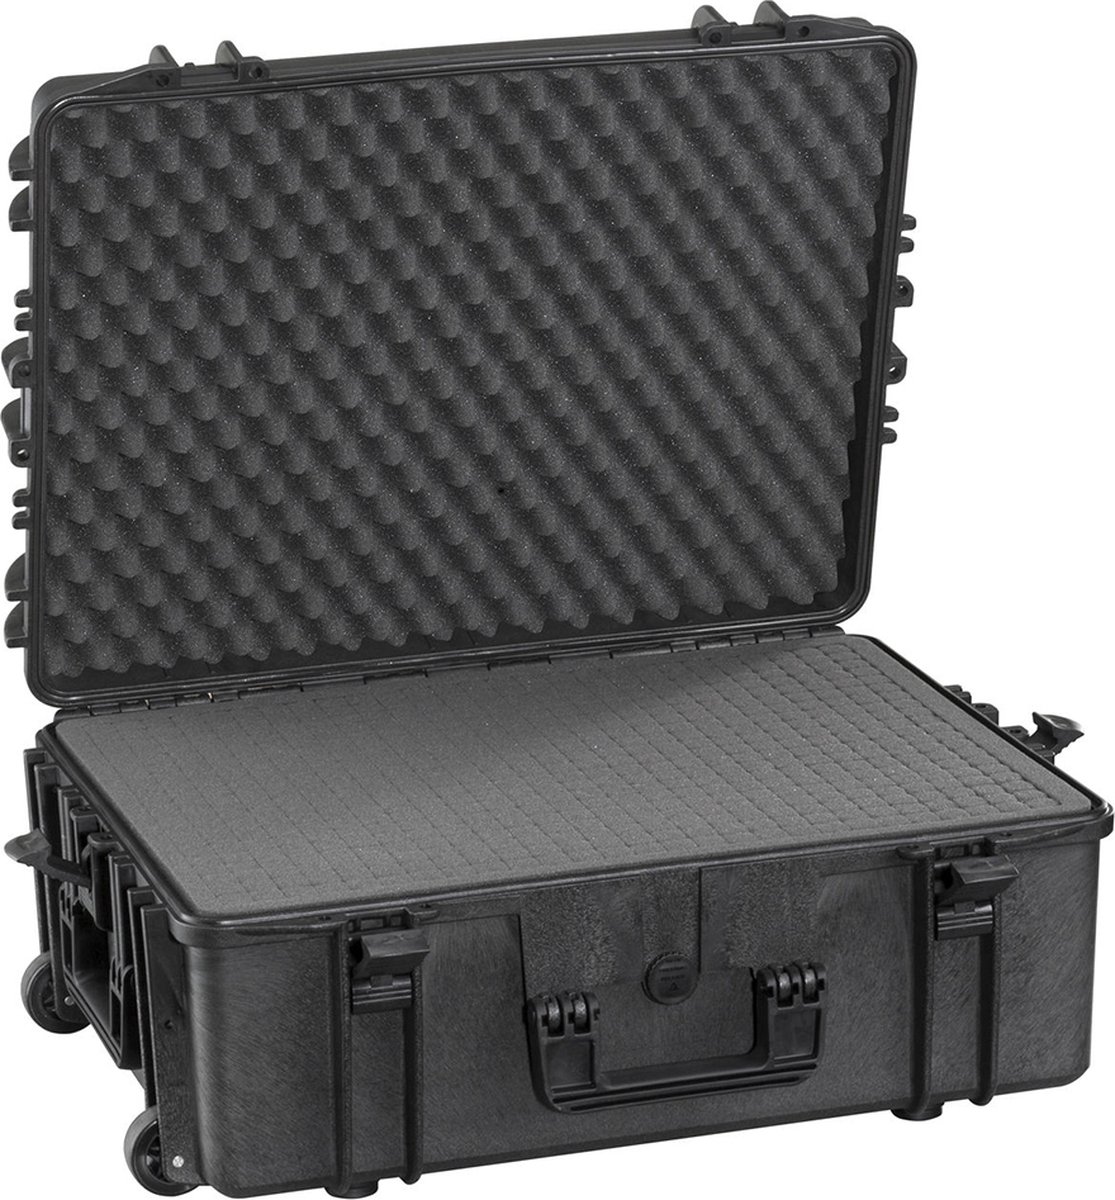 Gaffergear camera koffer 062 zwart trolley uitvoering incl. plukschuim - 52,800000 x 28,600000 x 28,600000 cm (BxDxH)